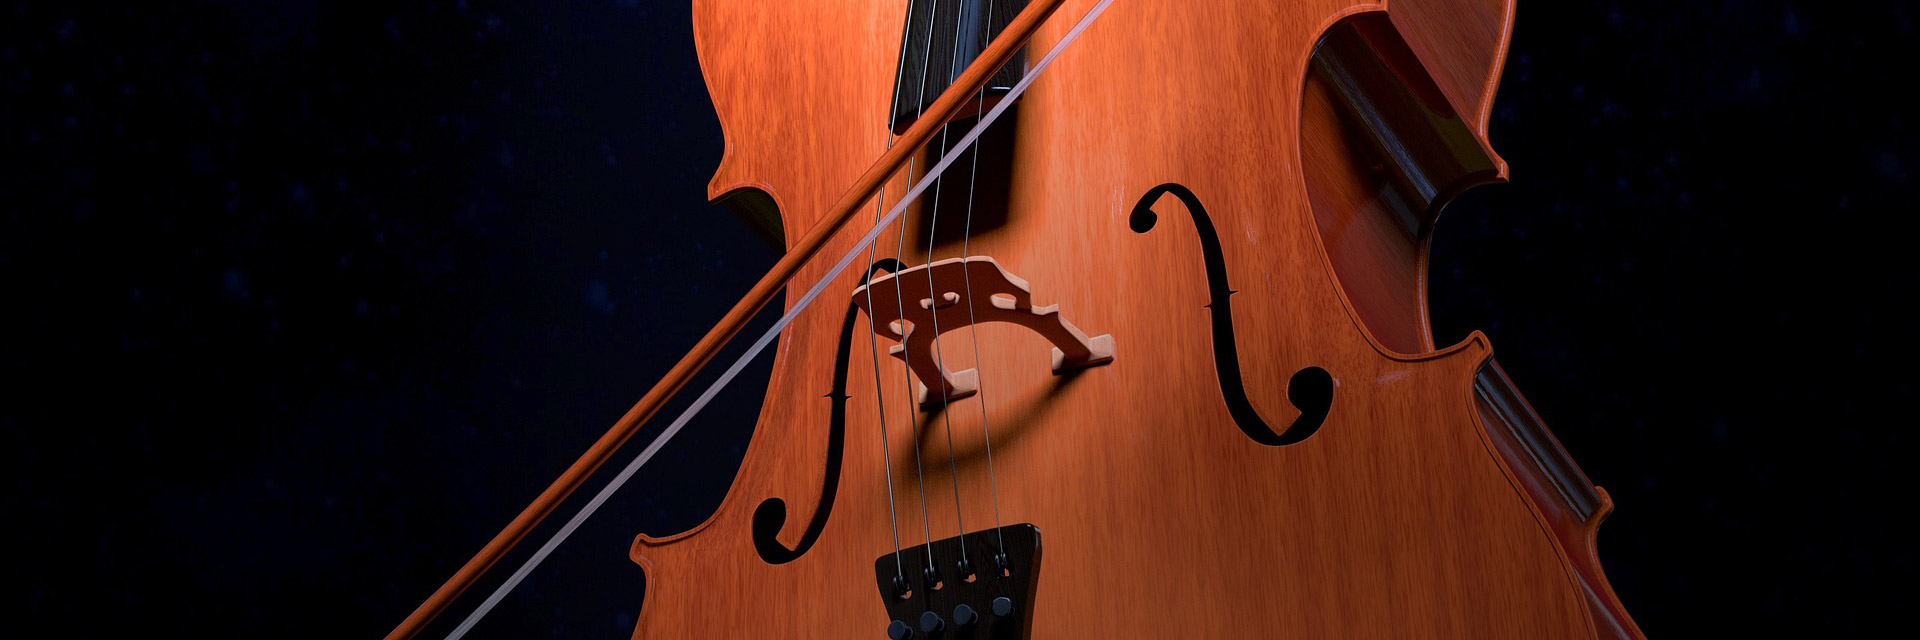 cello-2830561_1920.jpg